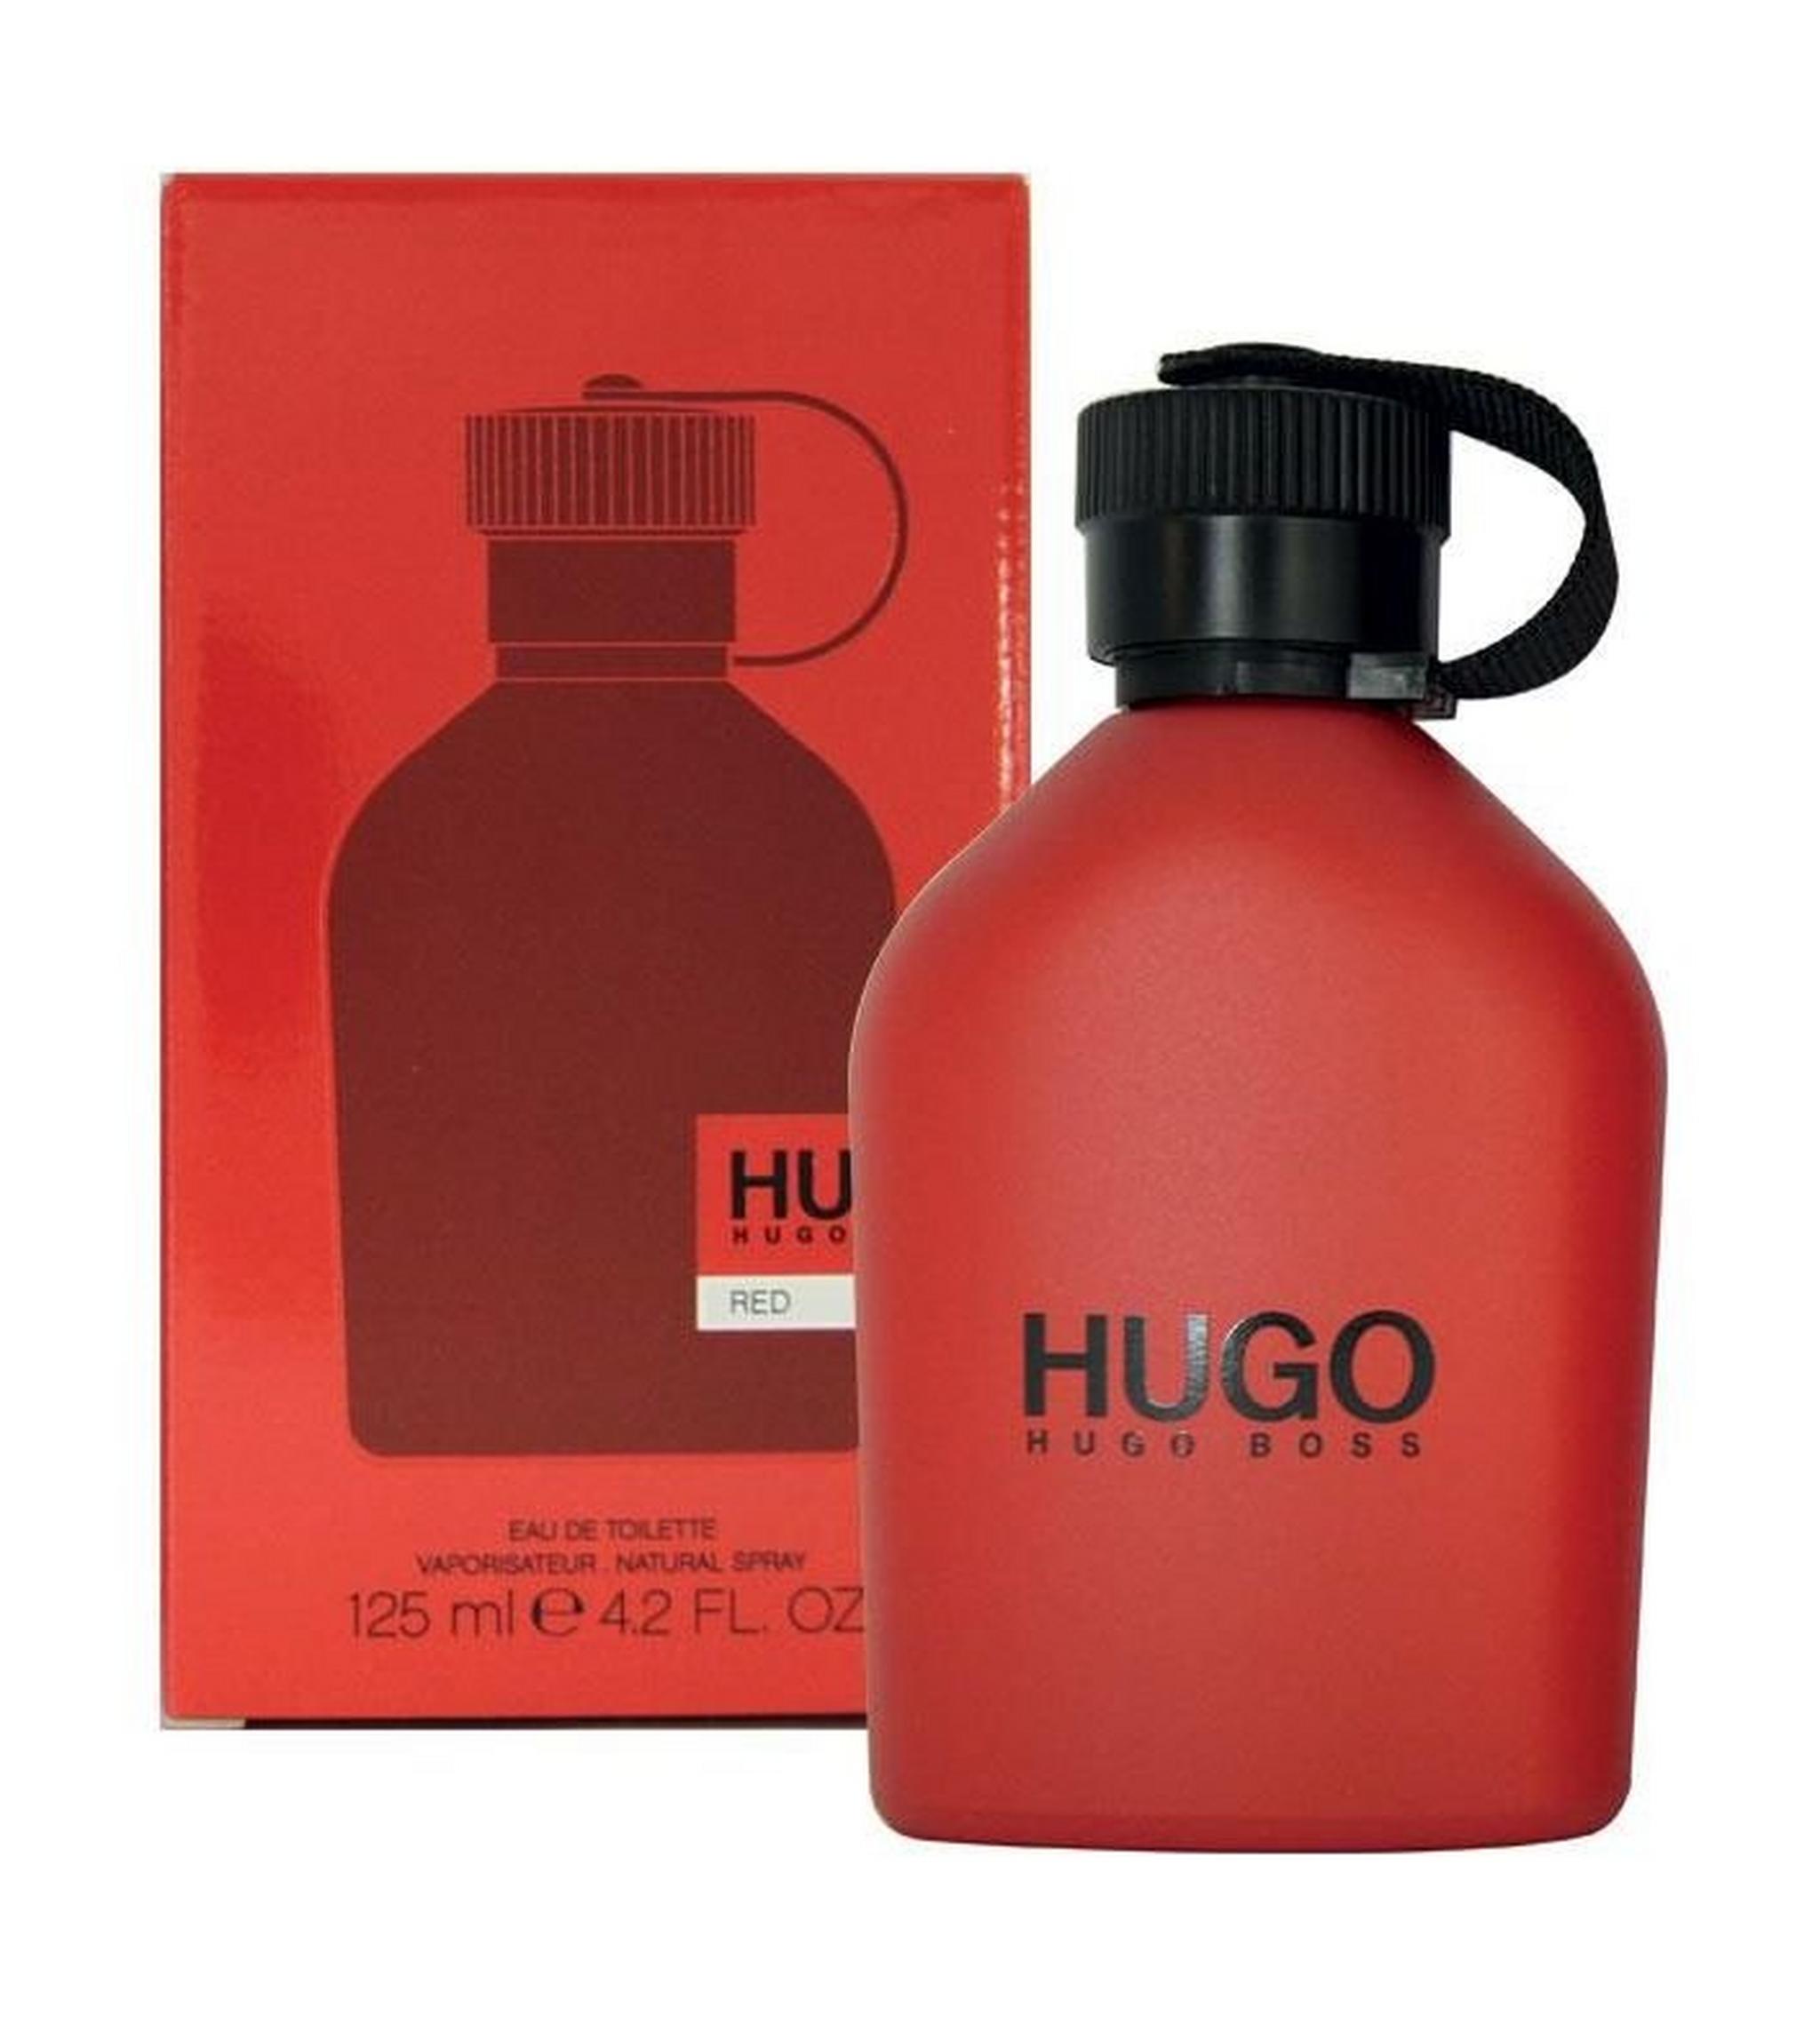 Hugo Boss Red by Hugo Boss For Men 125 ML Eau de Toilette